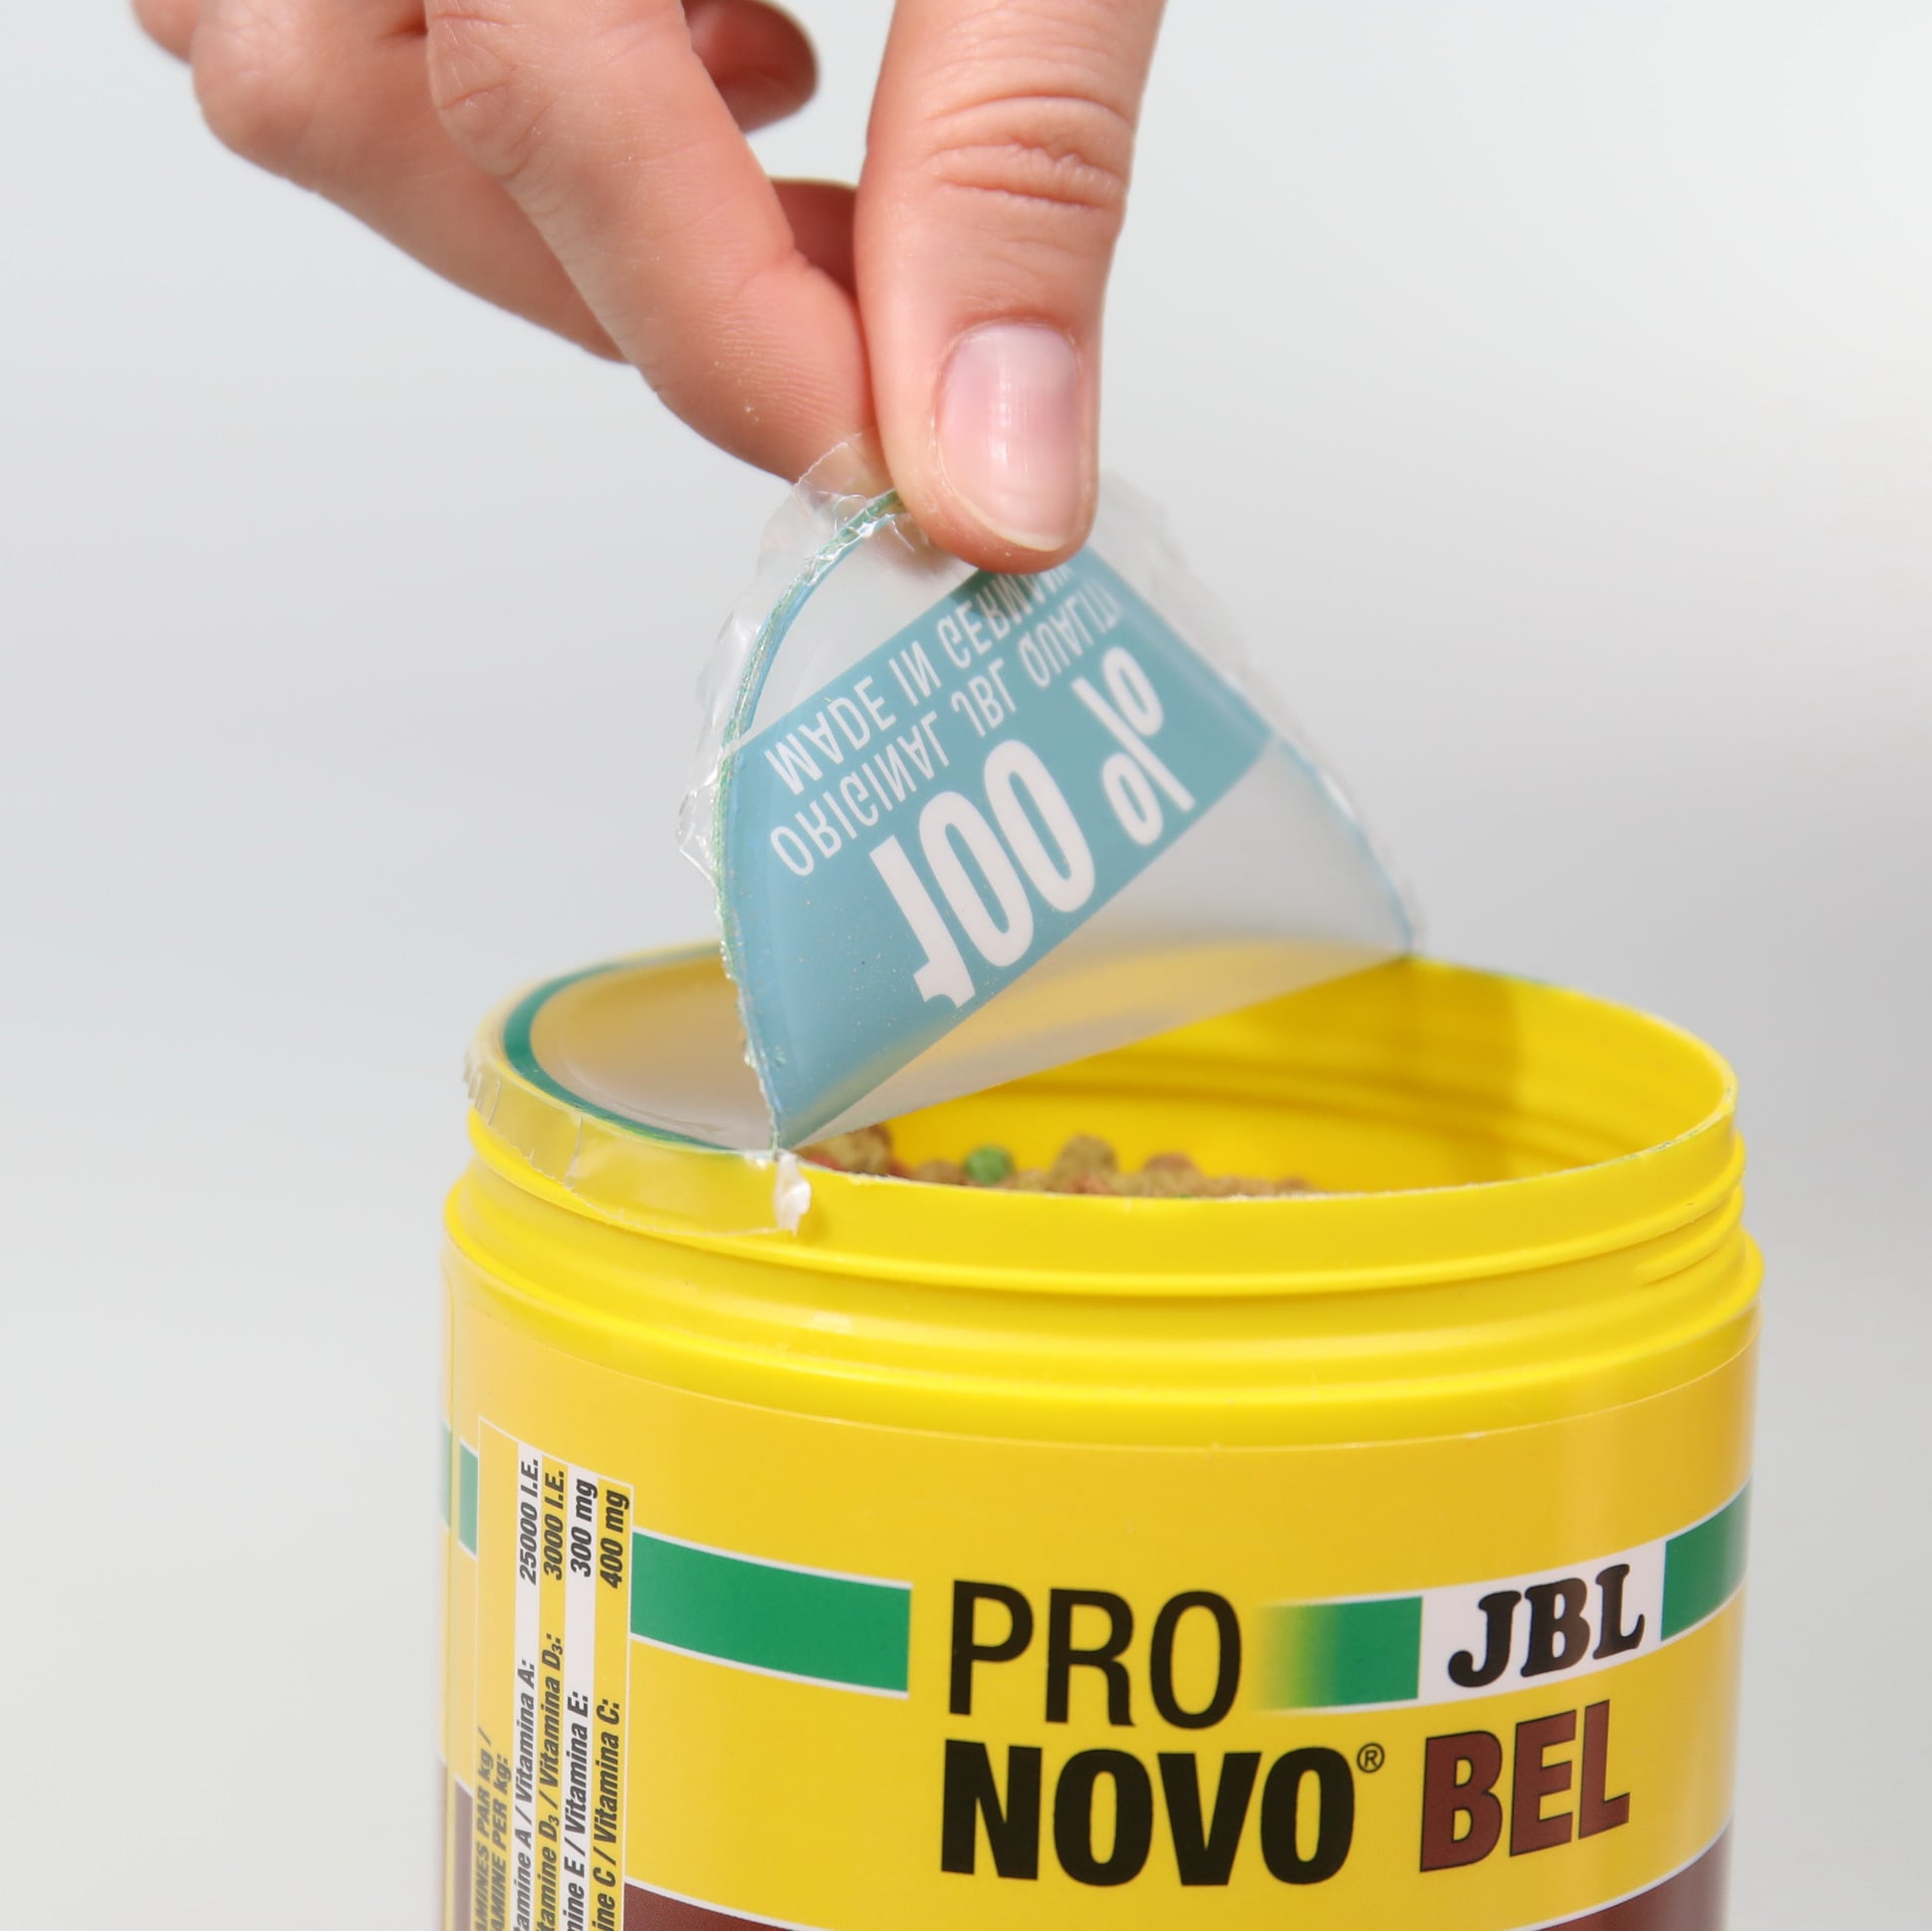 jbl-pronovo-bel-flakes-m-1000-ml-nourriture-de-base-en-flocons-pour-tous-poissons-d-aquarium-de-8-a-20-cm-1-min